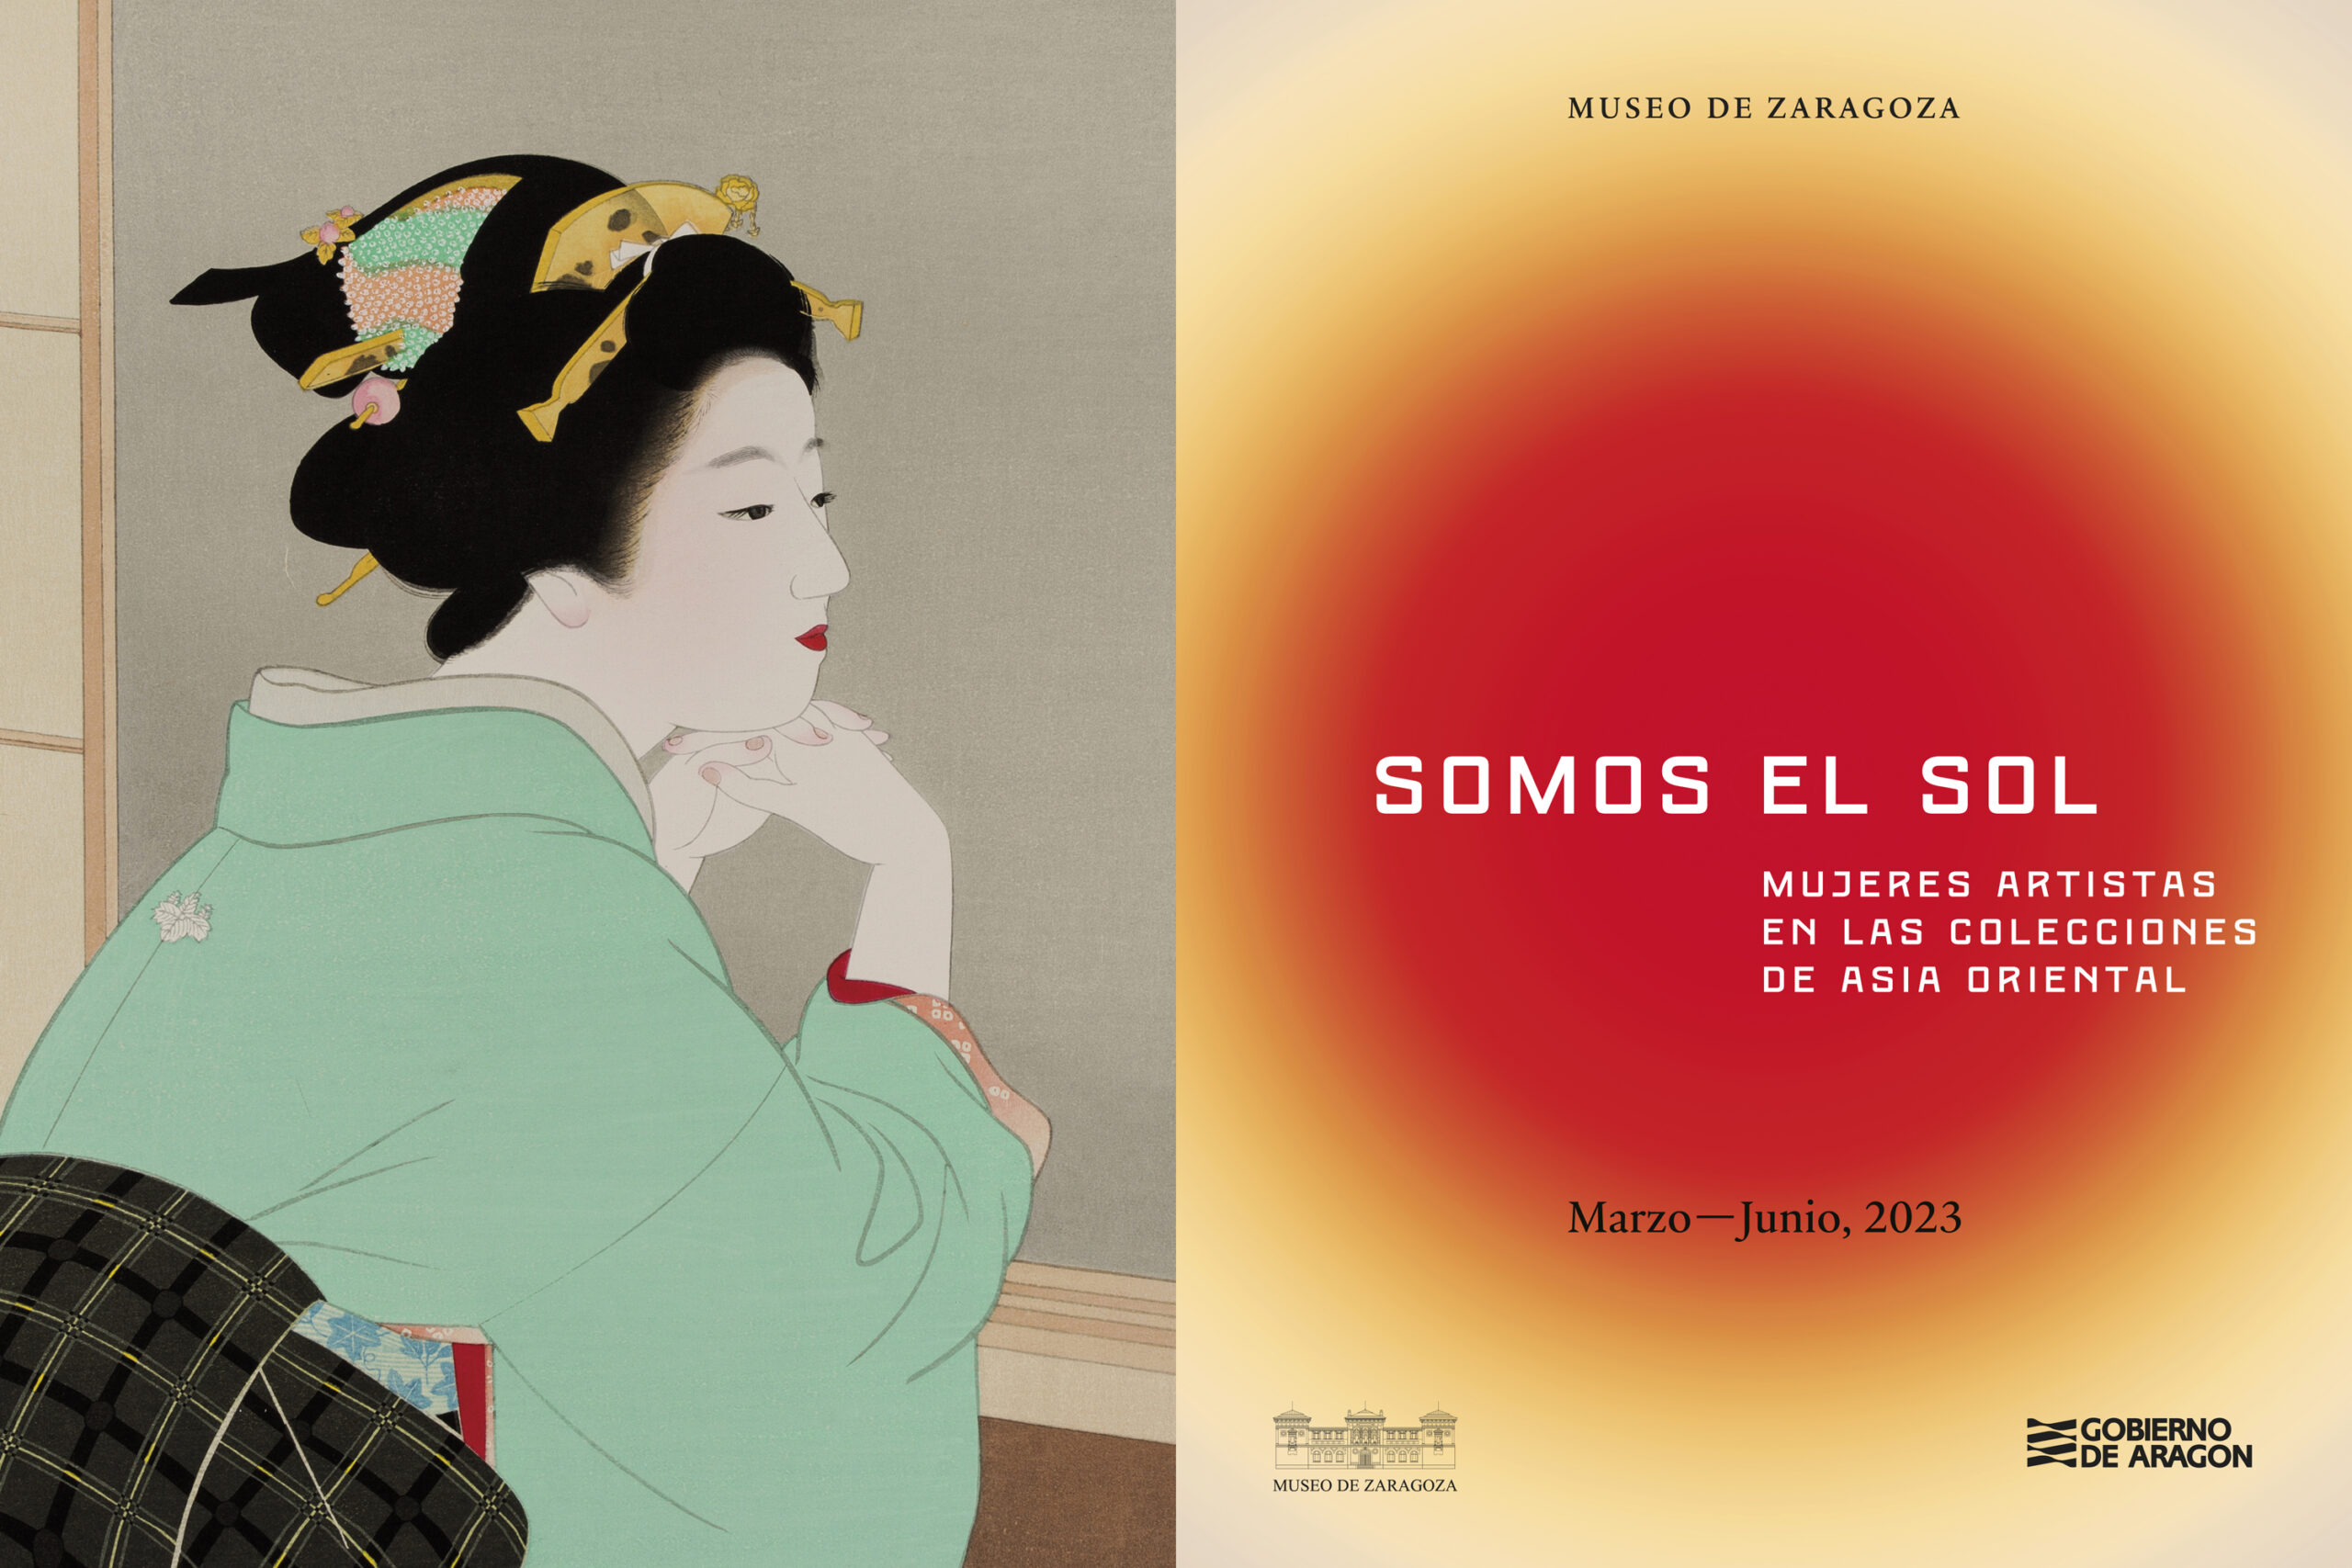 サラゴサ美術館（Plaza de los Sitios 6）で2023年6月まで開催される日本美術展「We are the Sun」。